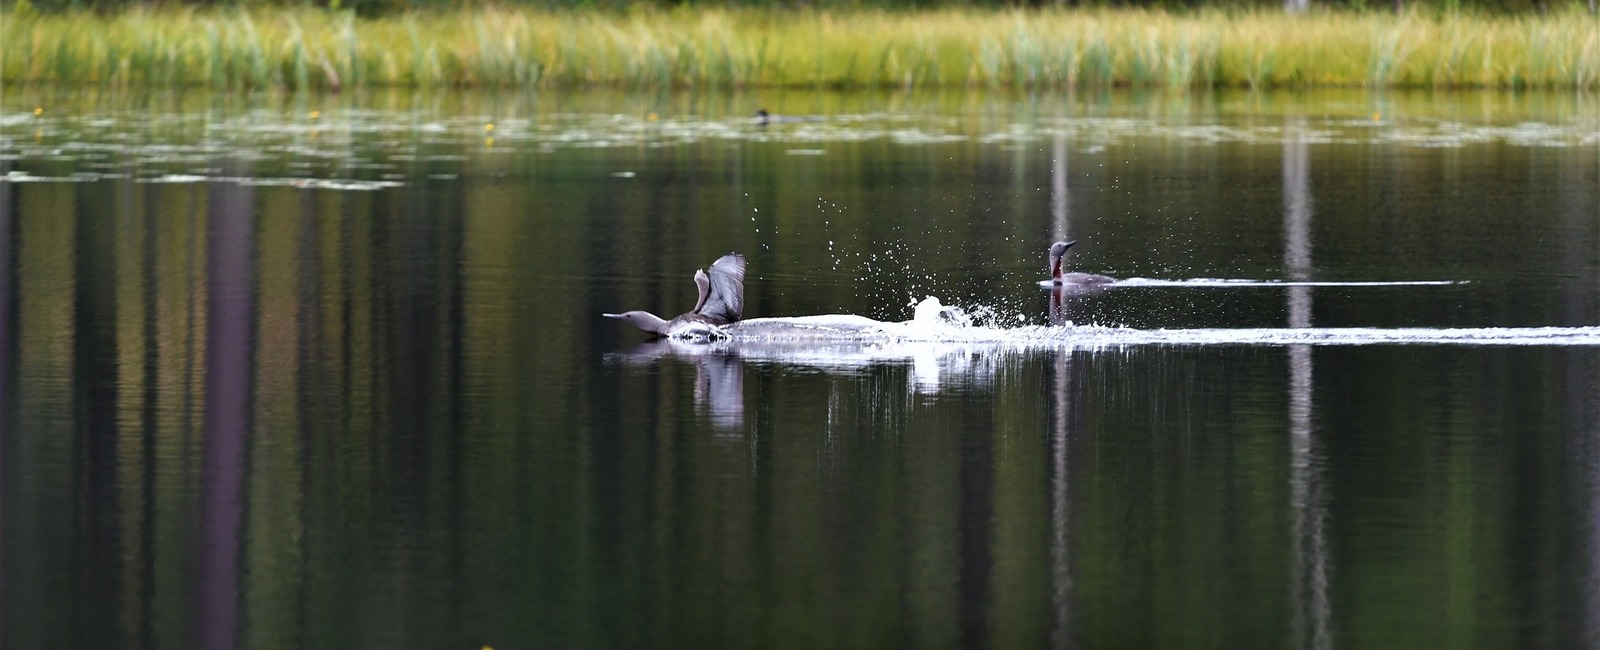 Fågel som landar i sjö